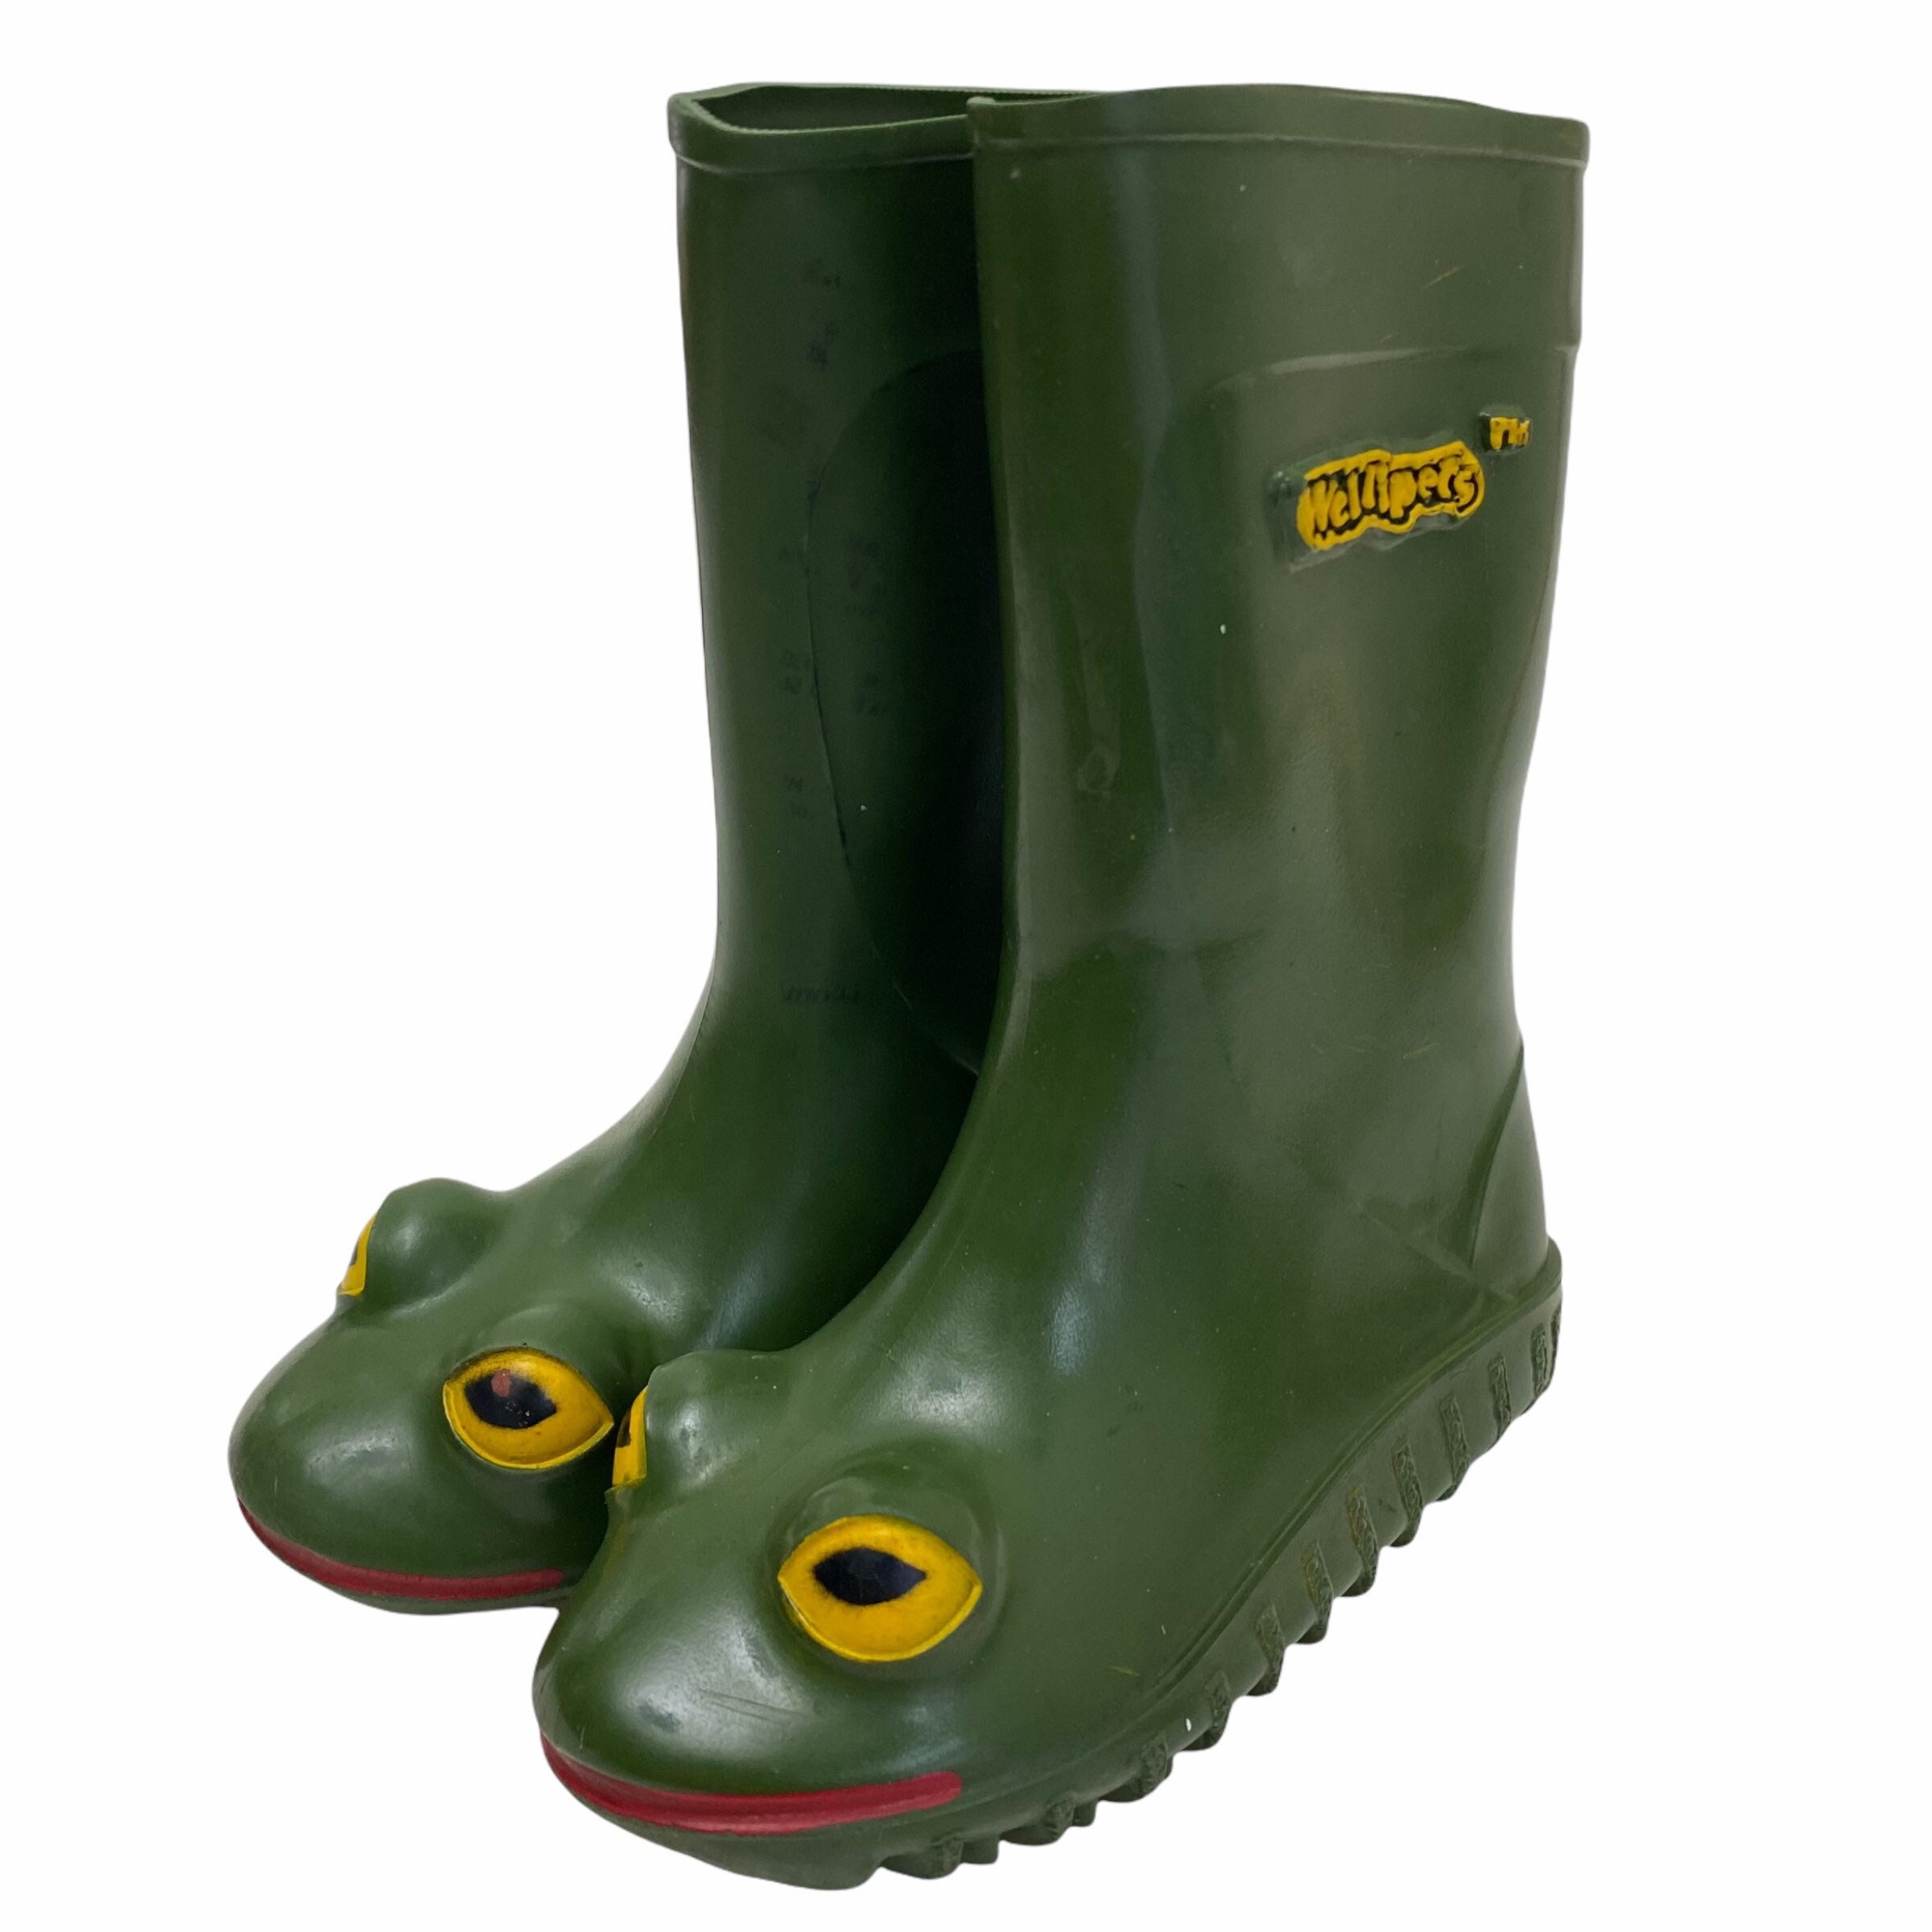 Frog boots rust цена фото 2